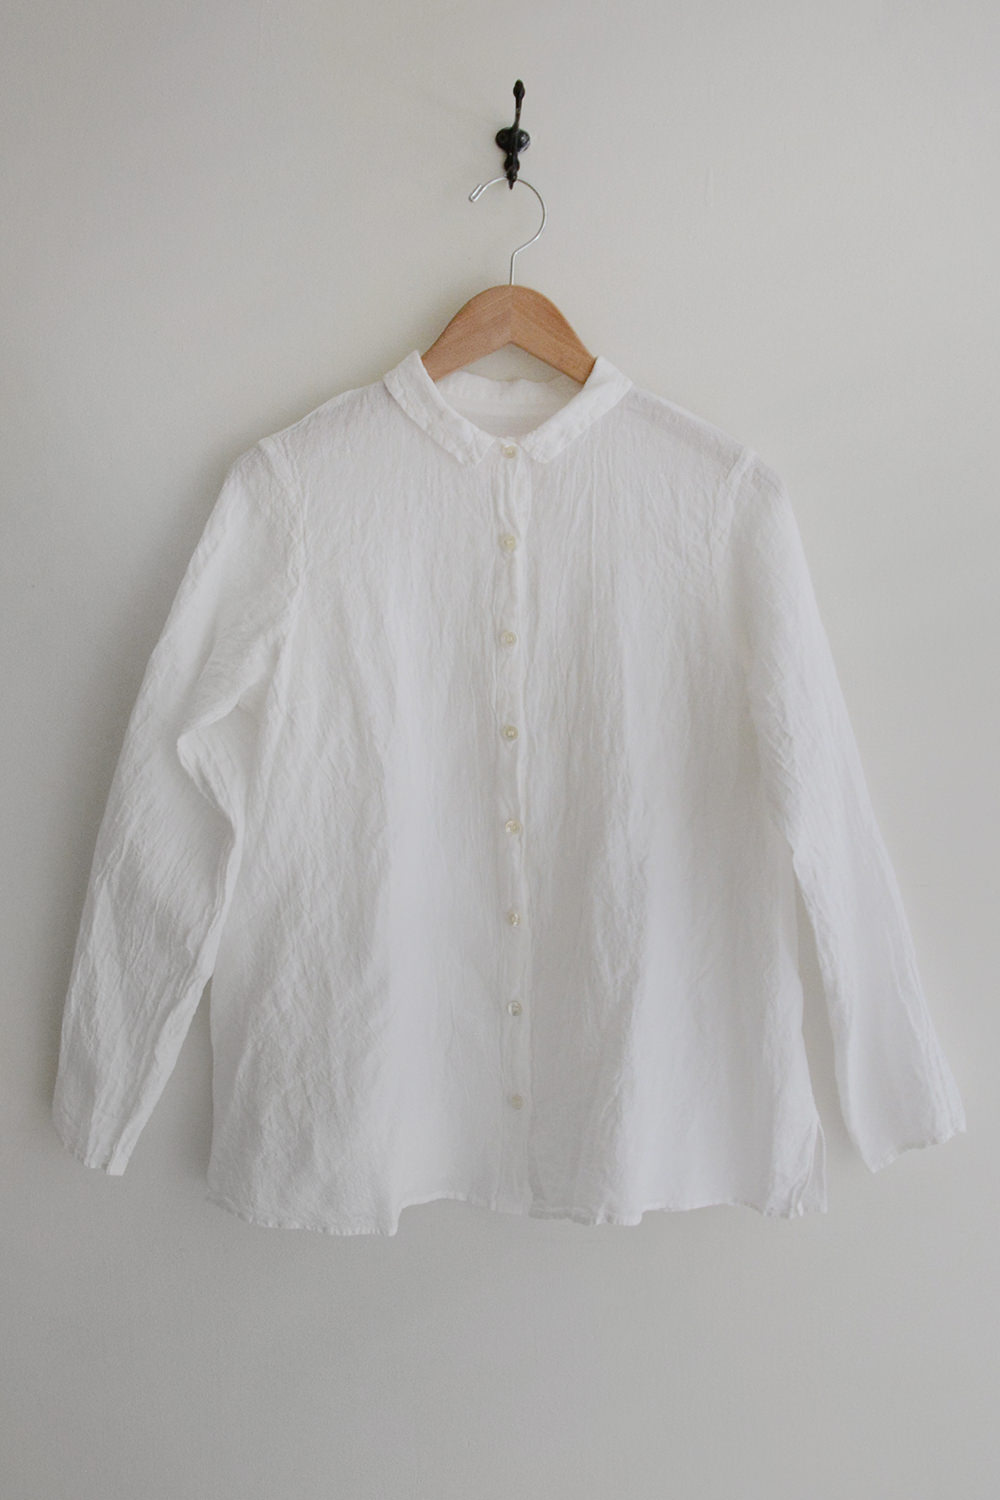 Manuelle Guibal Linen Shirt 6661 Full White Top Picture